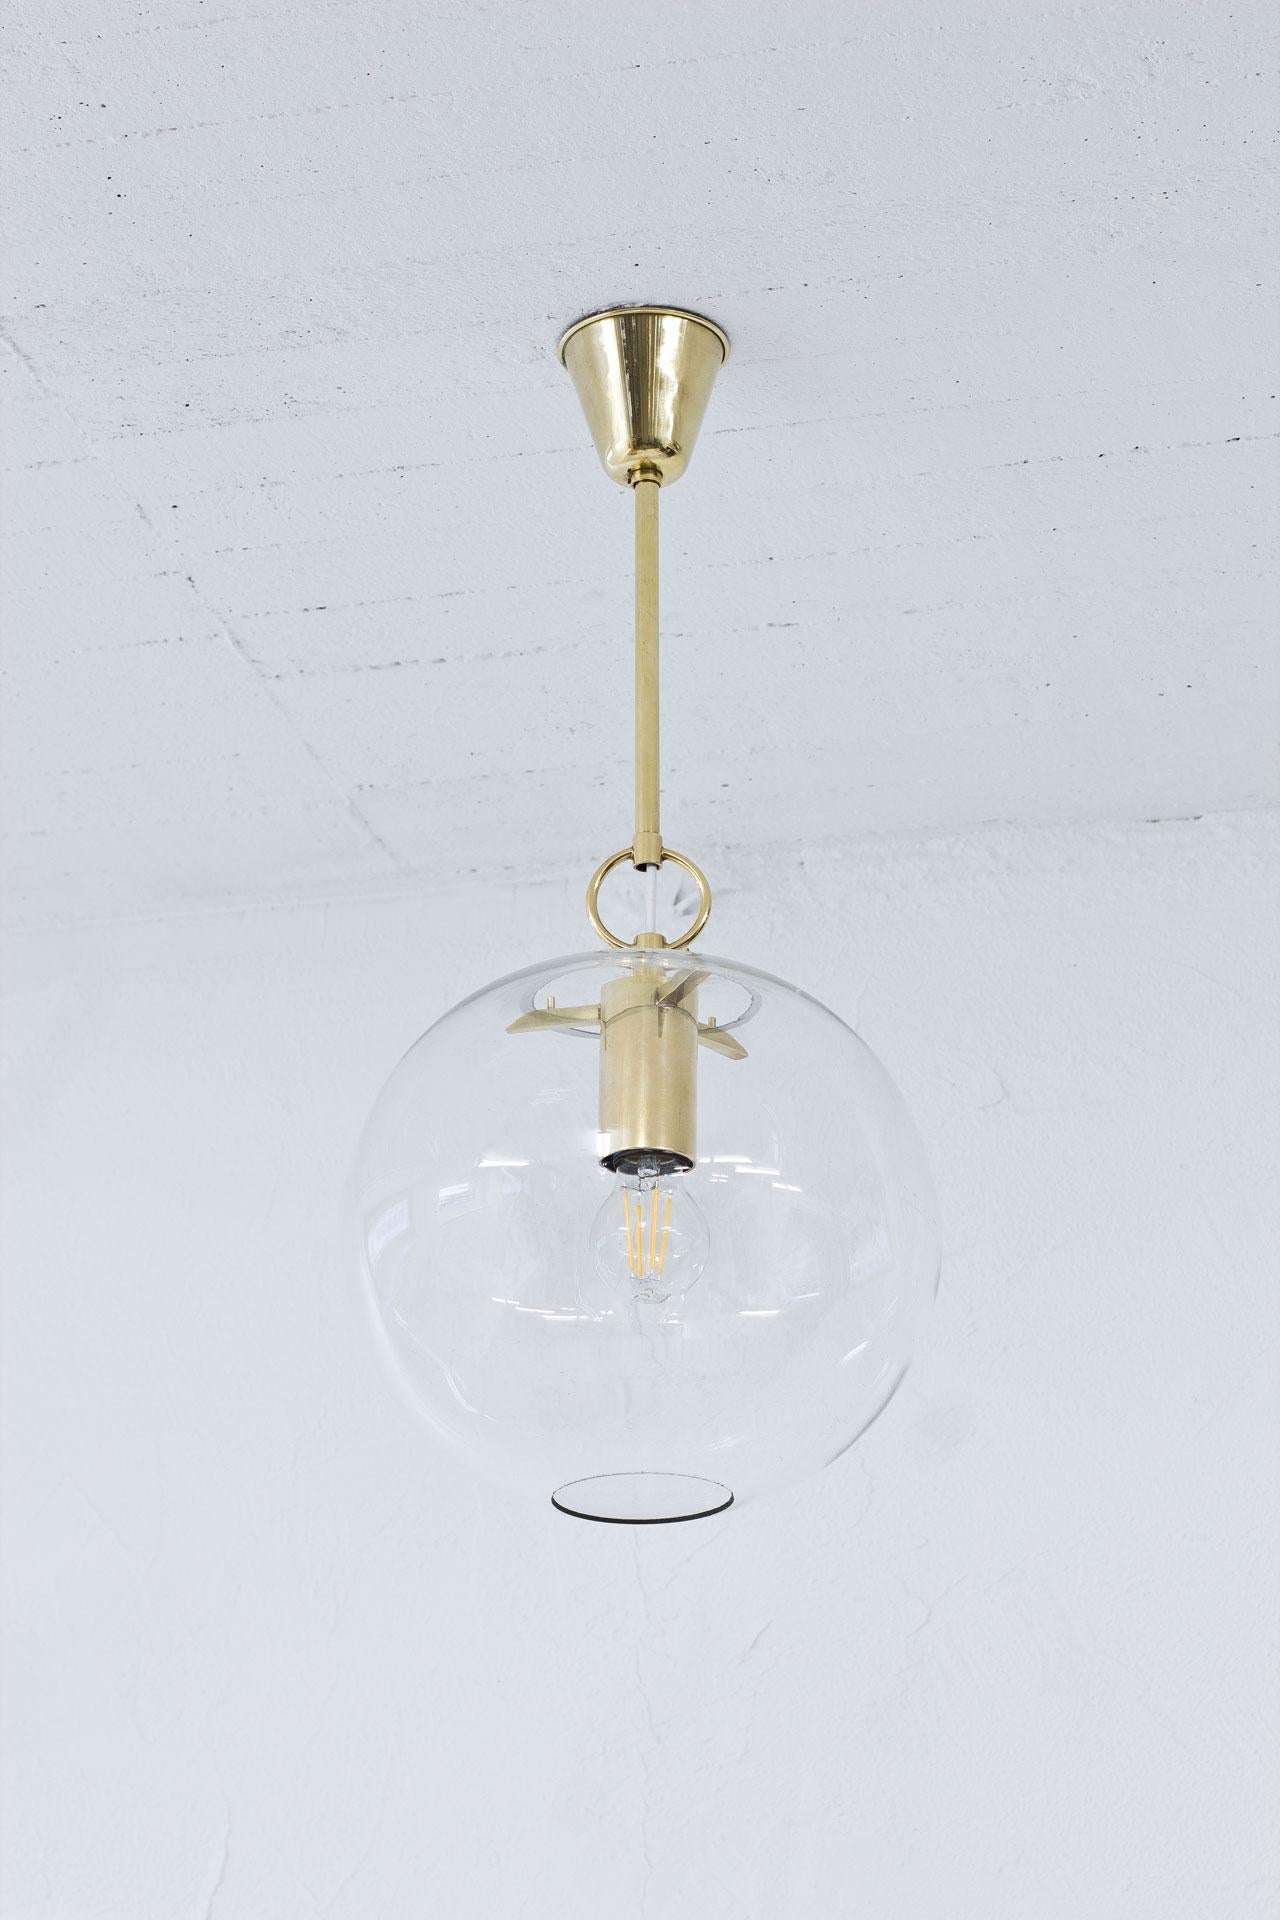 Hängeleuchte entworfen  von Hans-Agne Jakobsson in den 1950er Jahren. Hergestellt von seinem eigenen Unternehmen in Markaryd, Schweden. Die Lampe besteht aus Messingbeschlägen mit originalem Klarglasschirm.
Die Elektrizität wurde erneuert. 